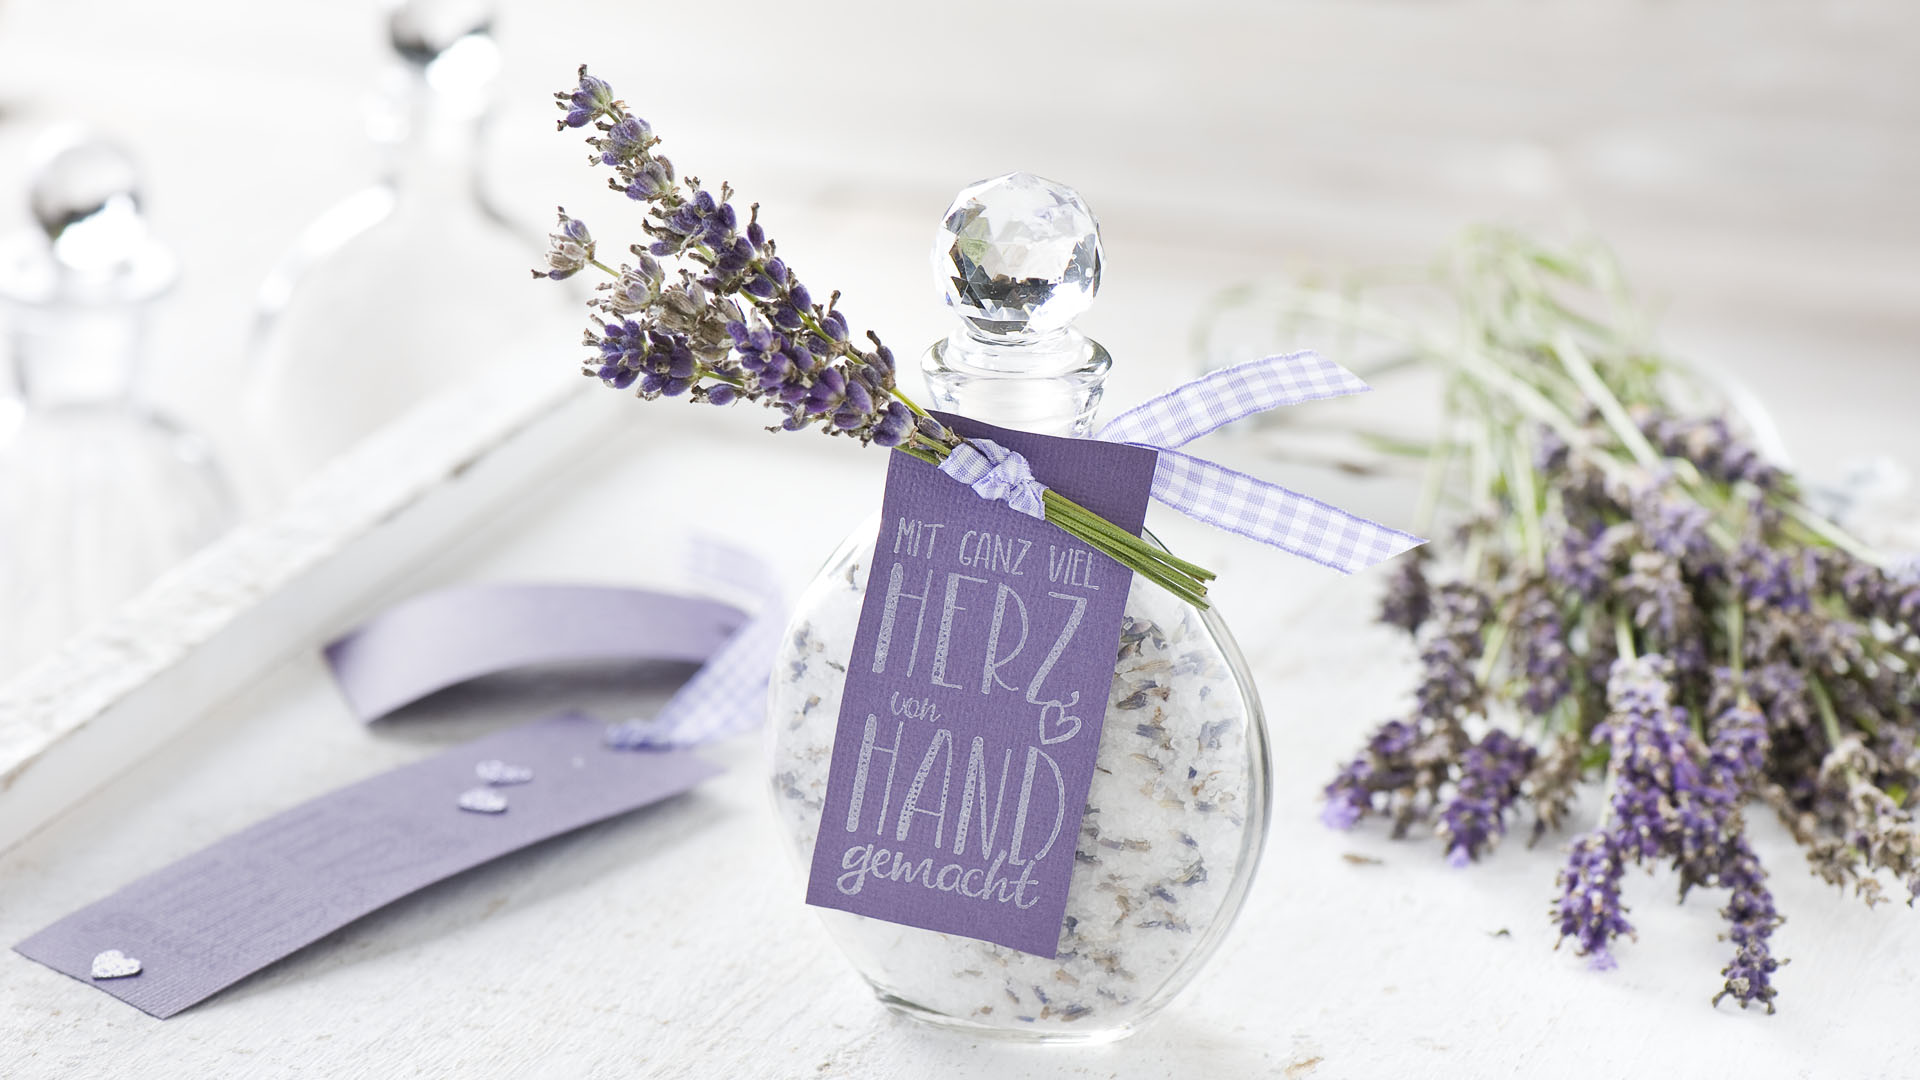 Ideen für kleine Geschenke: selbstgemachtes Badesalz mit Lavendelblüten